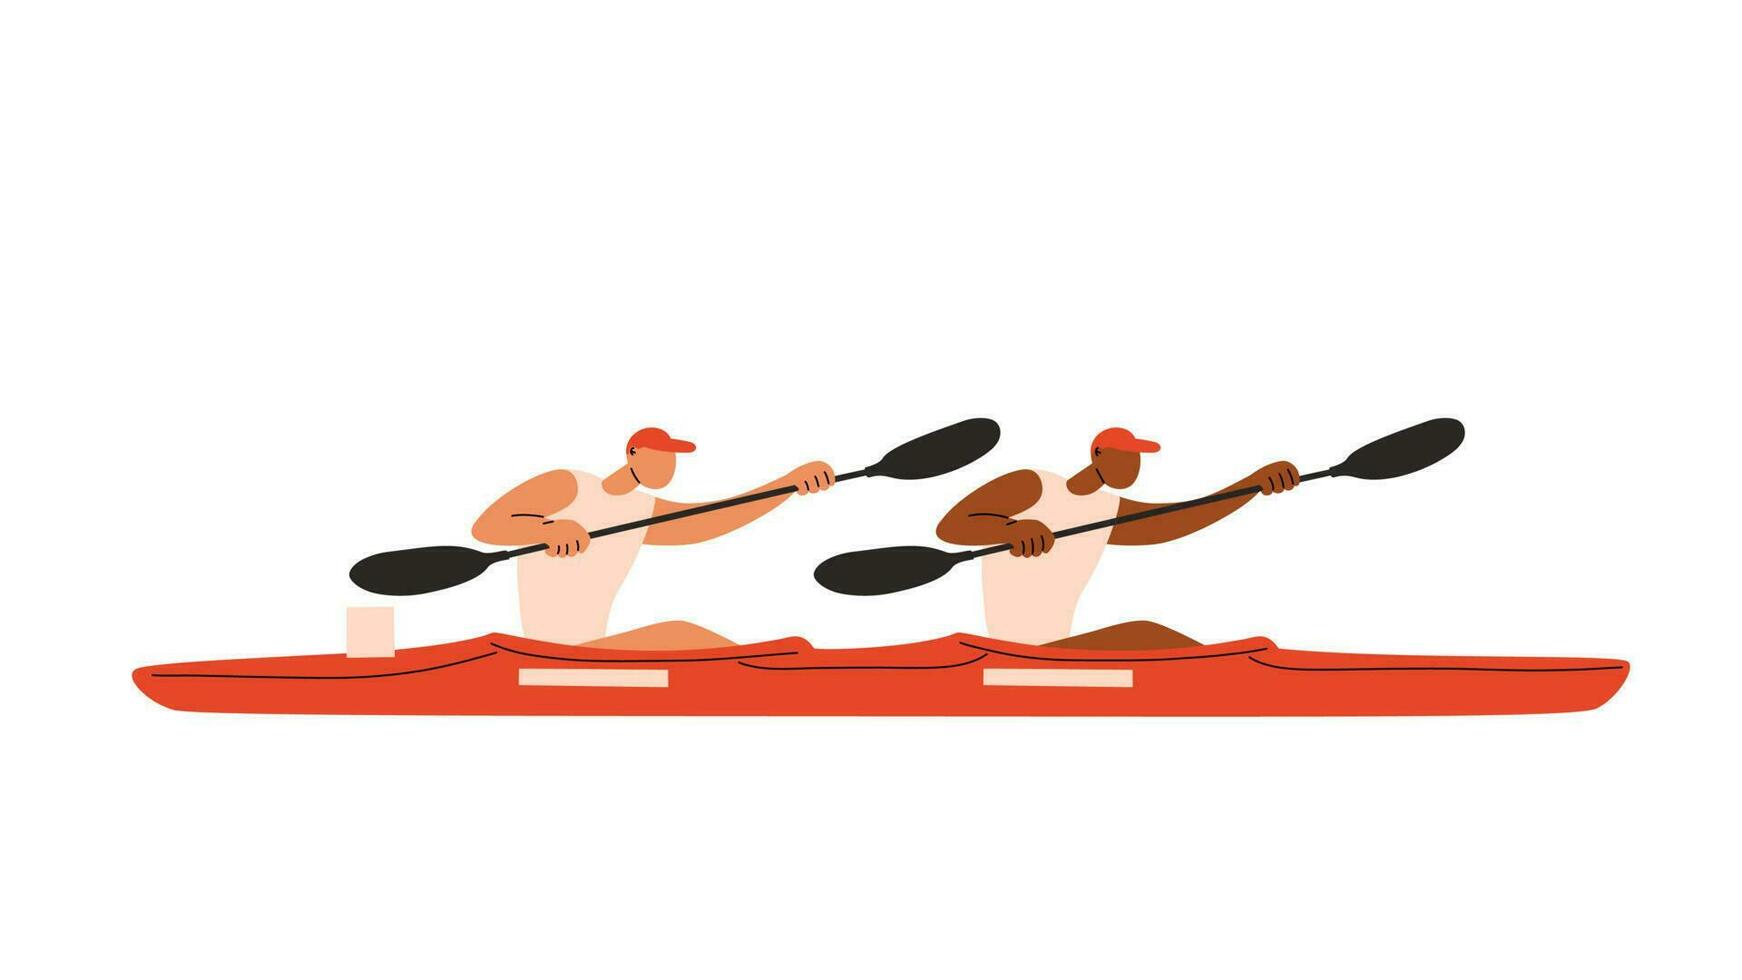 Canoe sprint double kayak athletes. K-2 kayakers. Vector cartoon illustration.